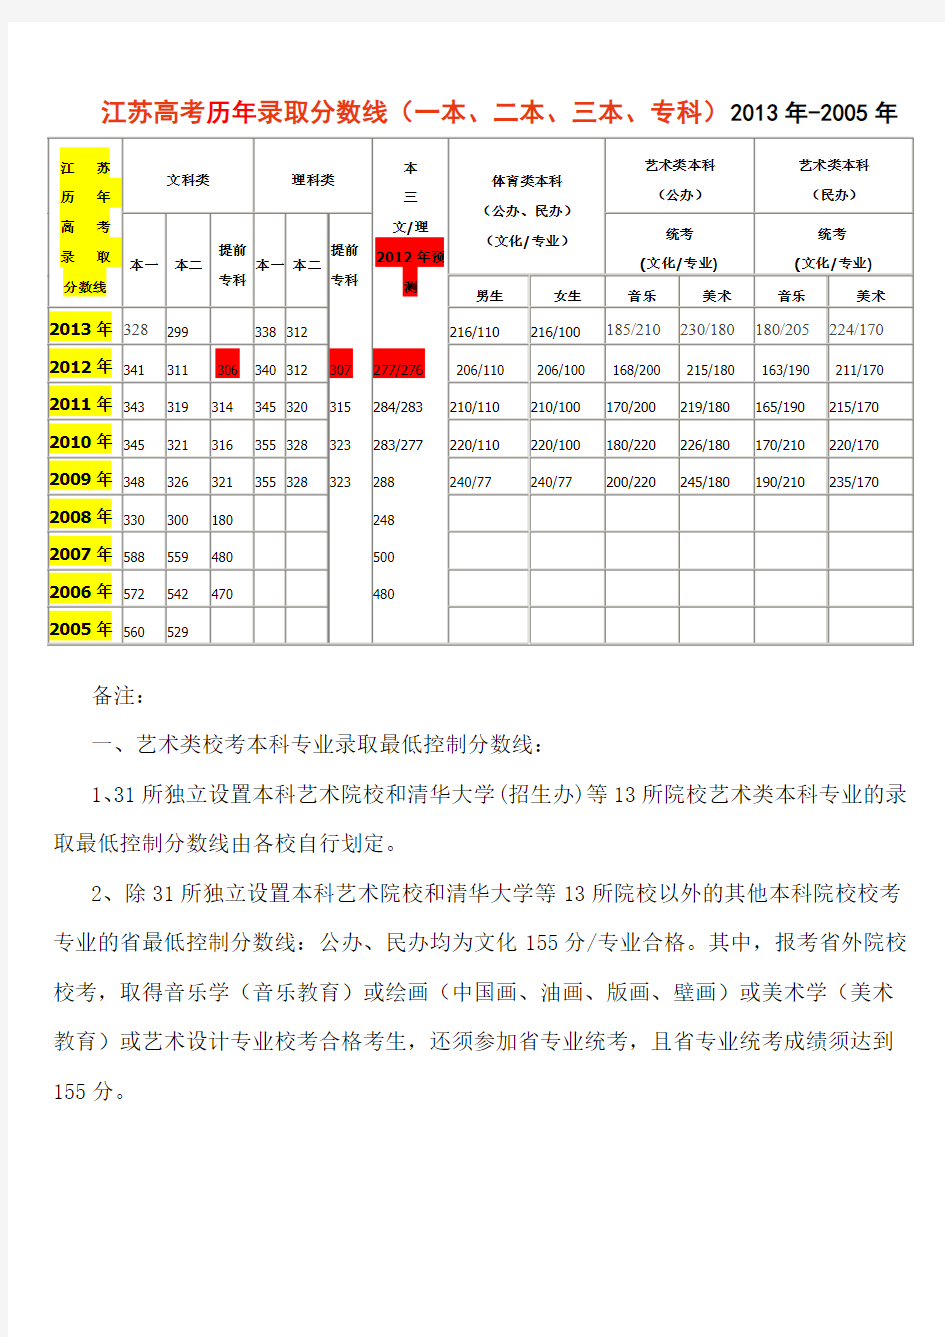 江苏高考2013年-2005年历年录取分数线(一本、二本、三本、专科)